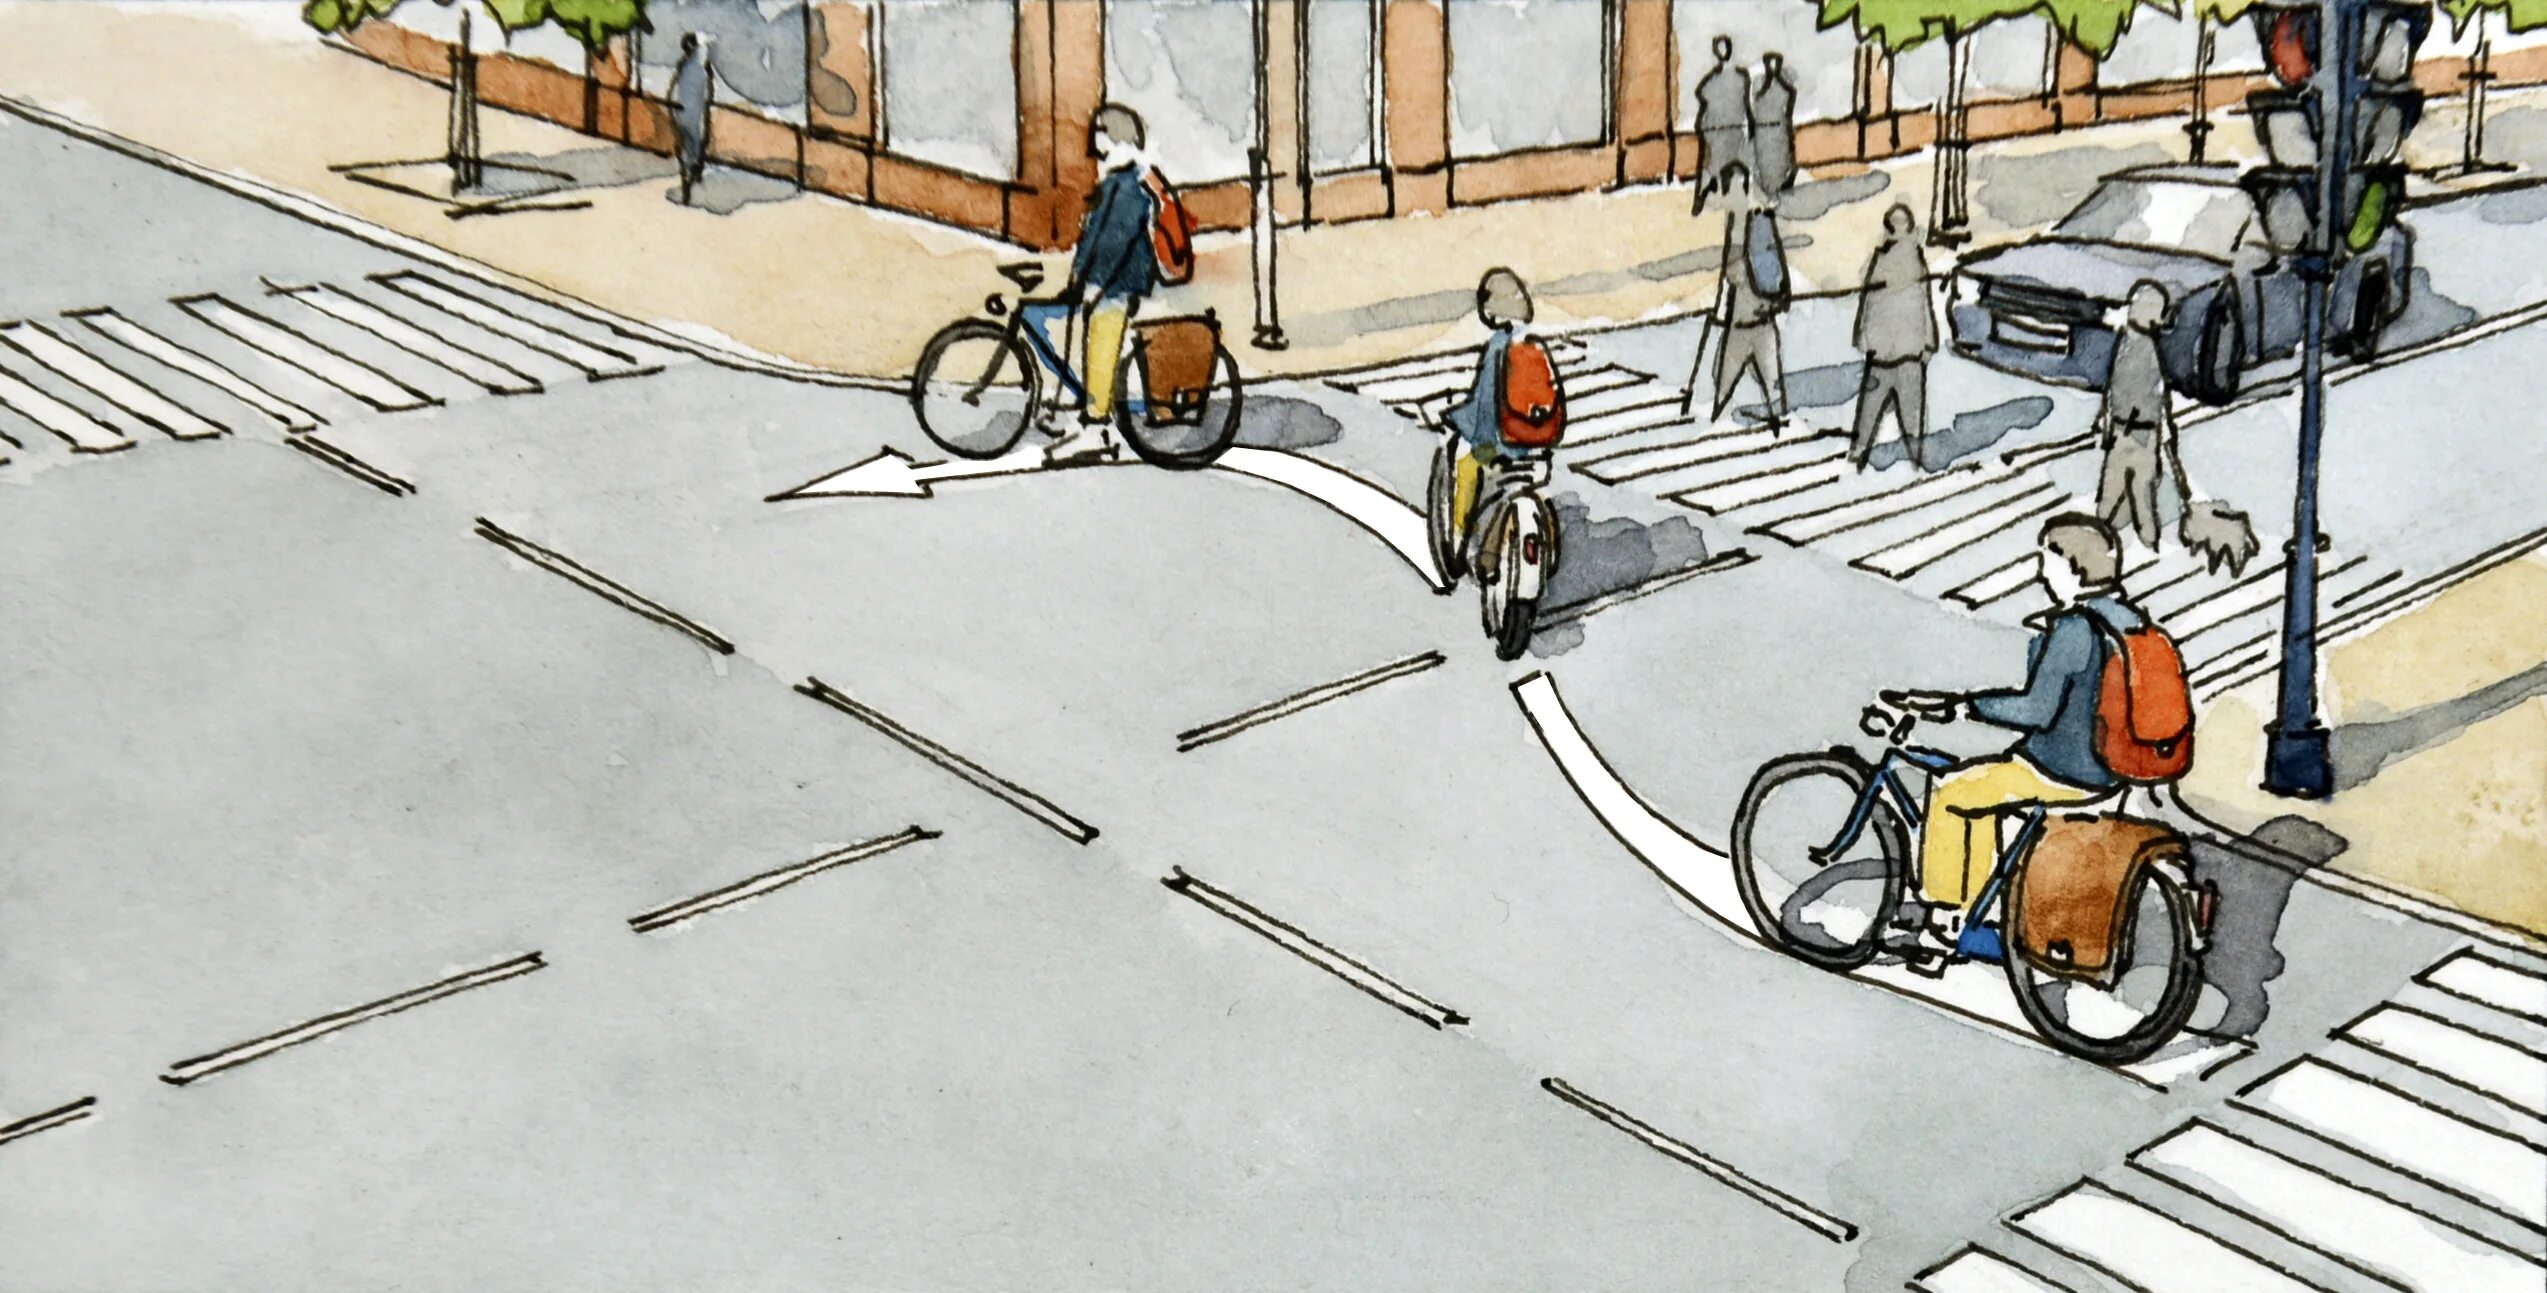 Штрихи пешеходы. Тротуар рисунок. Пешеходная дорожка рисунок. Велосипедист едет по проезжей части. Тротуар картинка для детей.